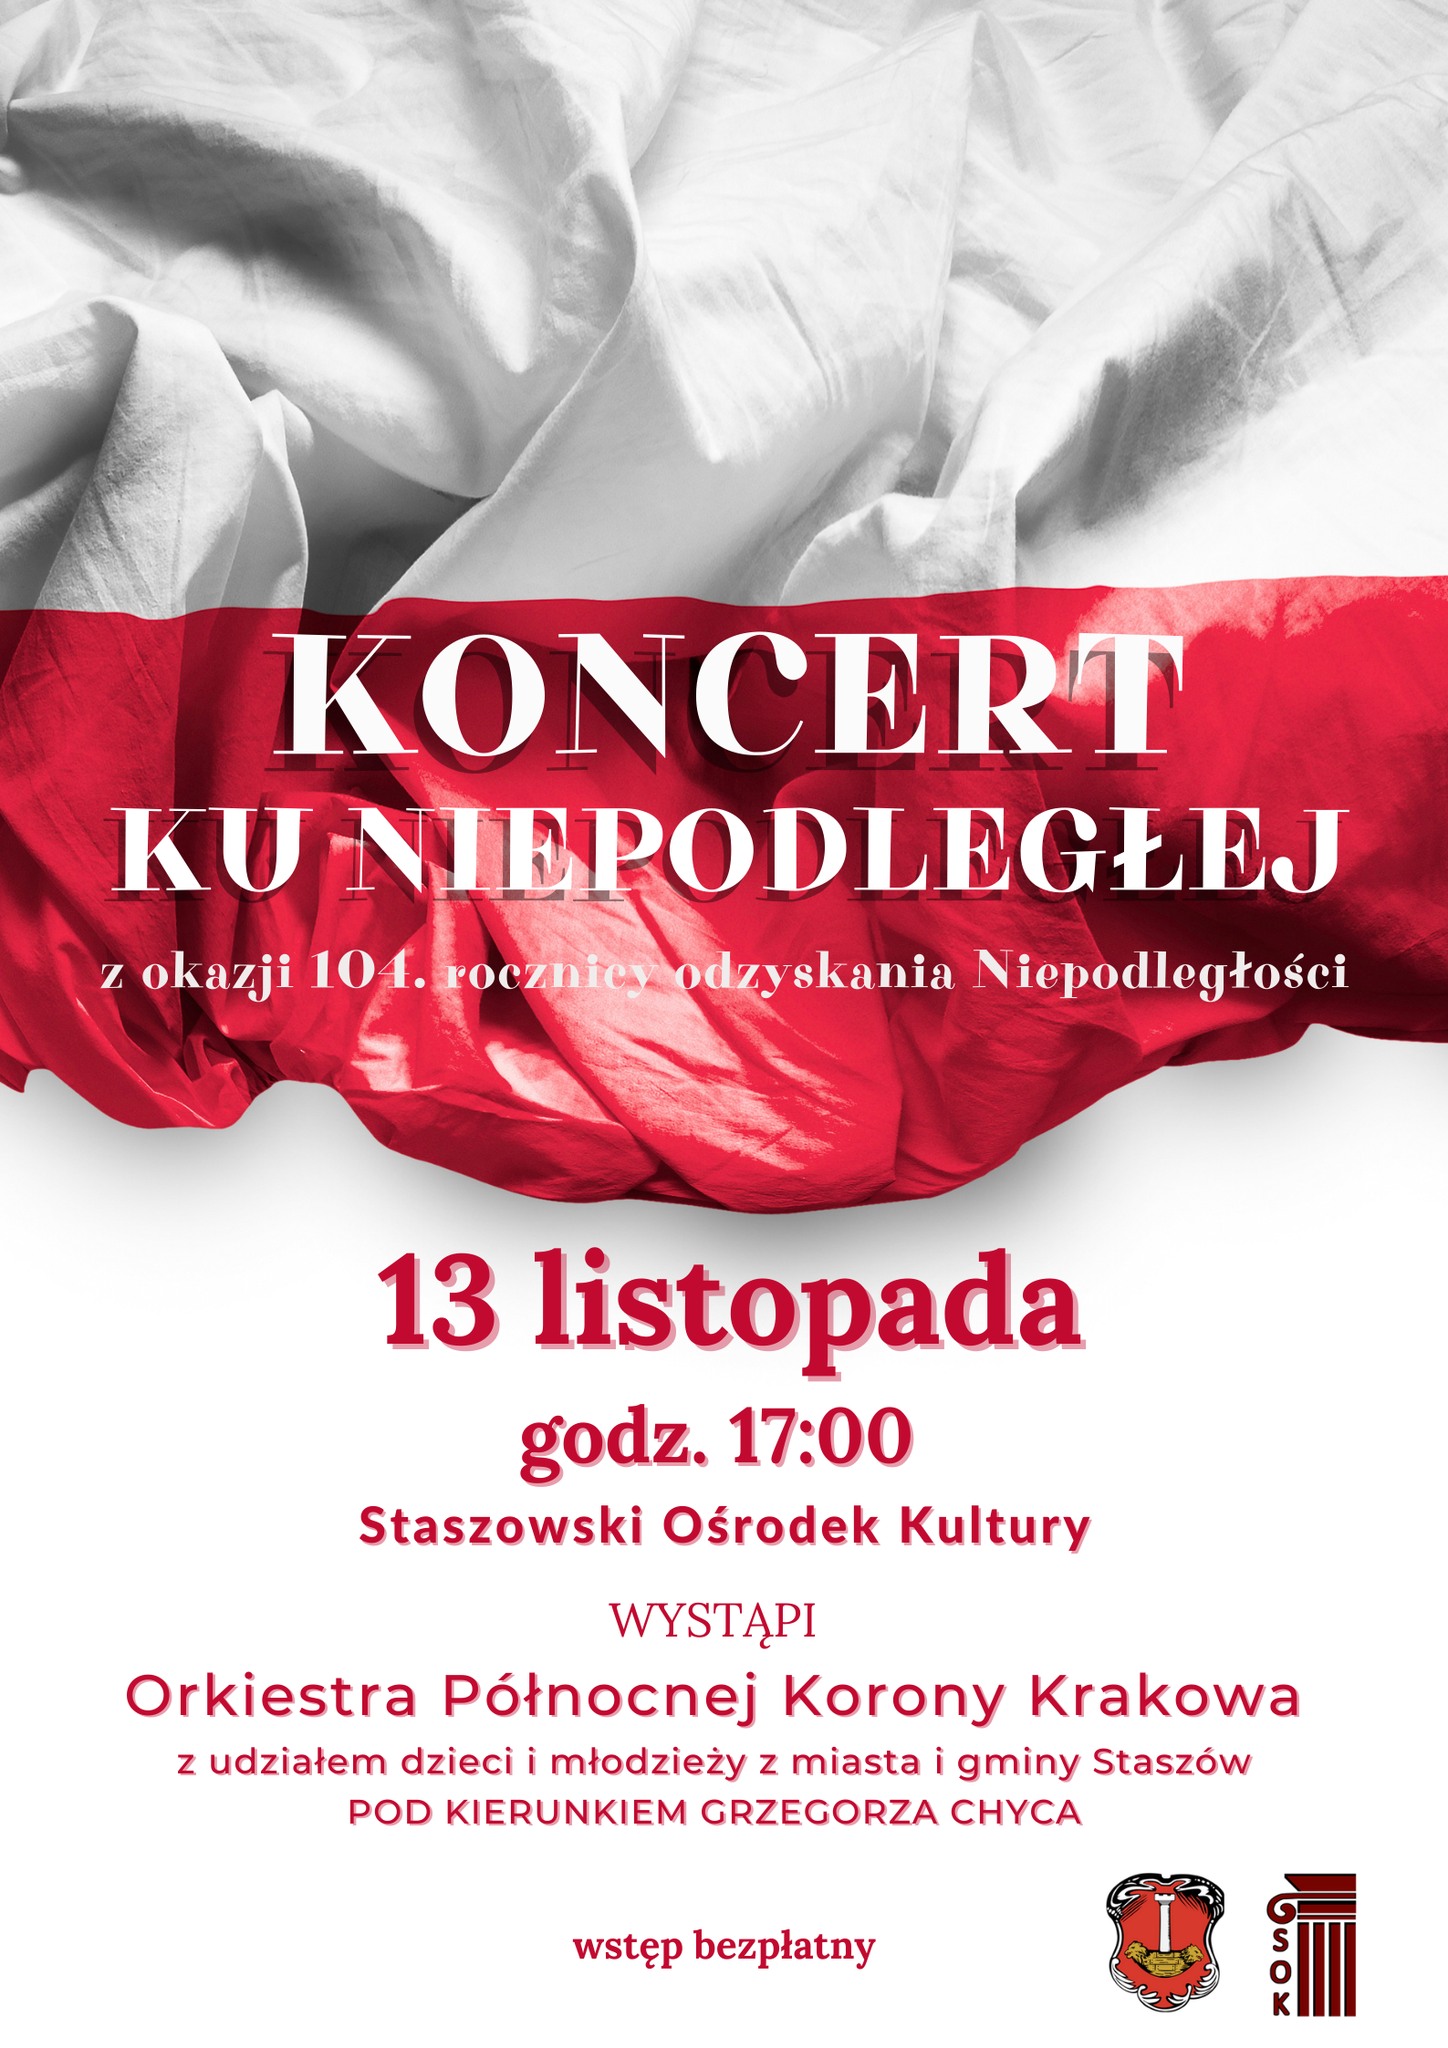 Plakat informacyjny: Koncert Ku Niepodległej - 13 listopada, godz. 17:00, Staszowski Ośrodek Kultury